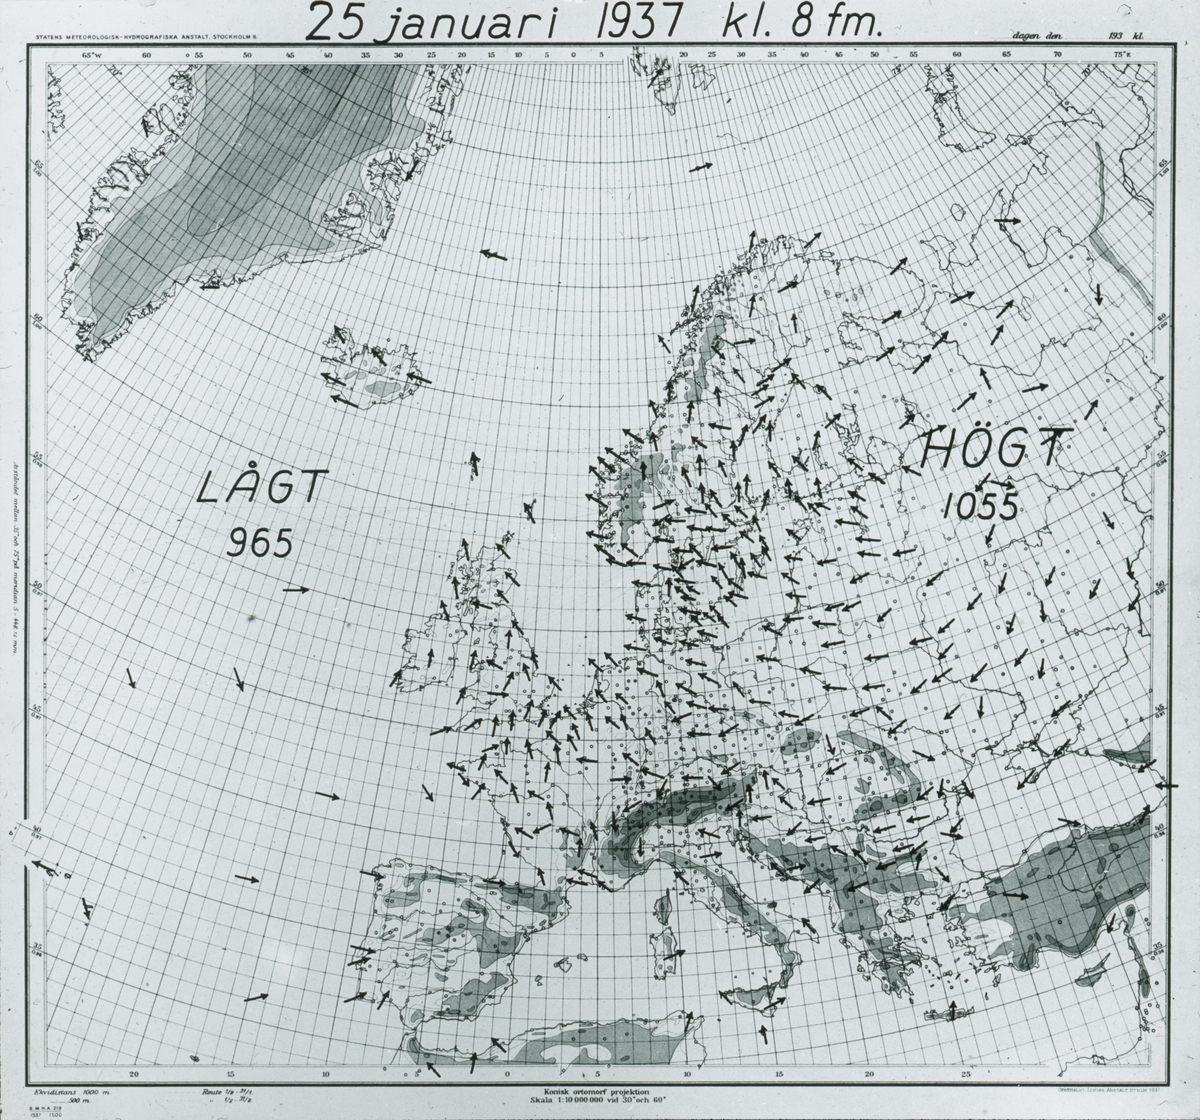 Fotografi från expedition till Spetsbergen. Europakarta.